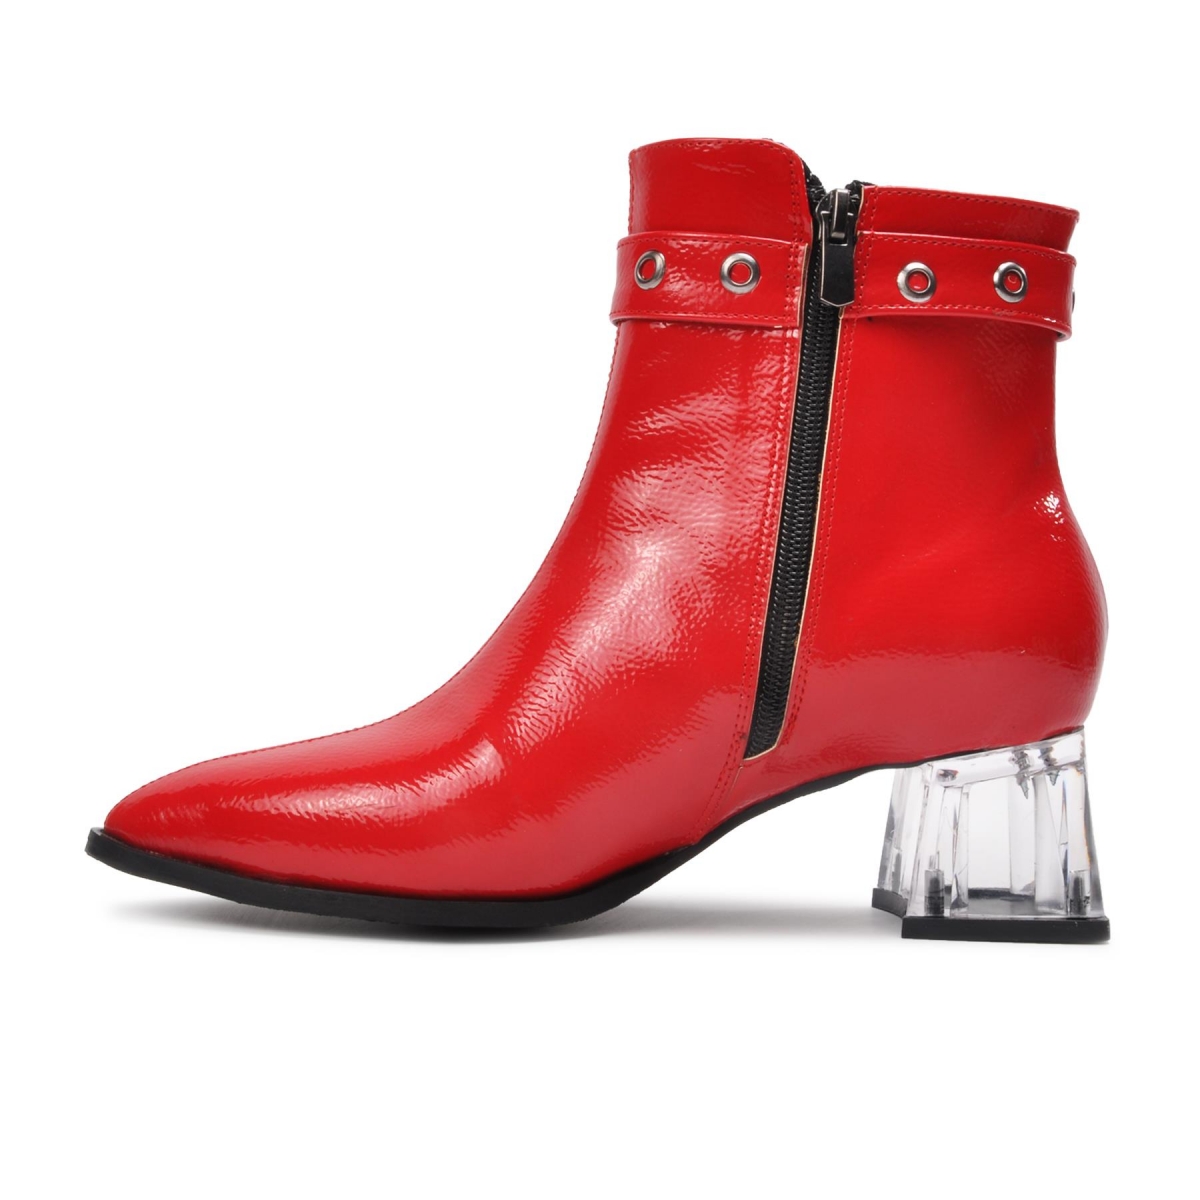 Flo Enes Ege 1001-1 Kırmızı-Rugan Fermuarlı Kadın Topuklu Bot. 3